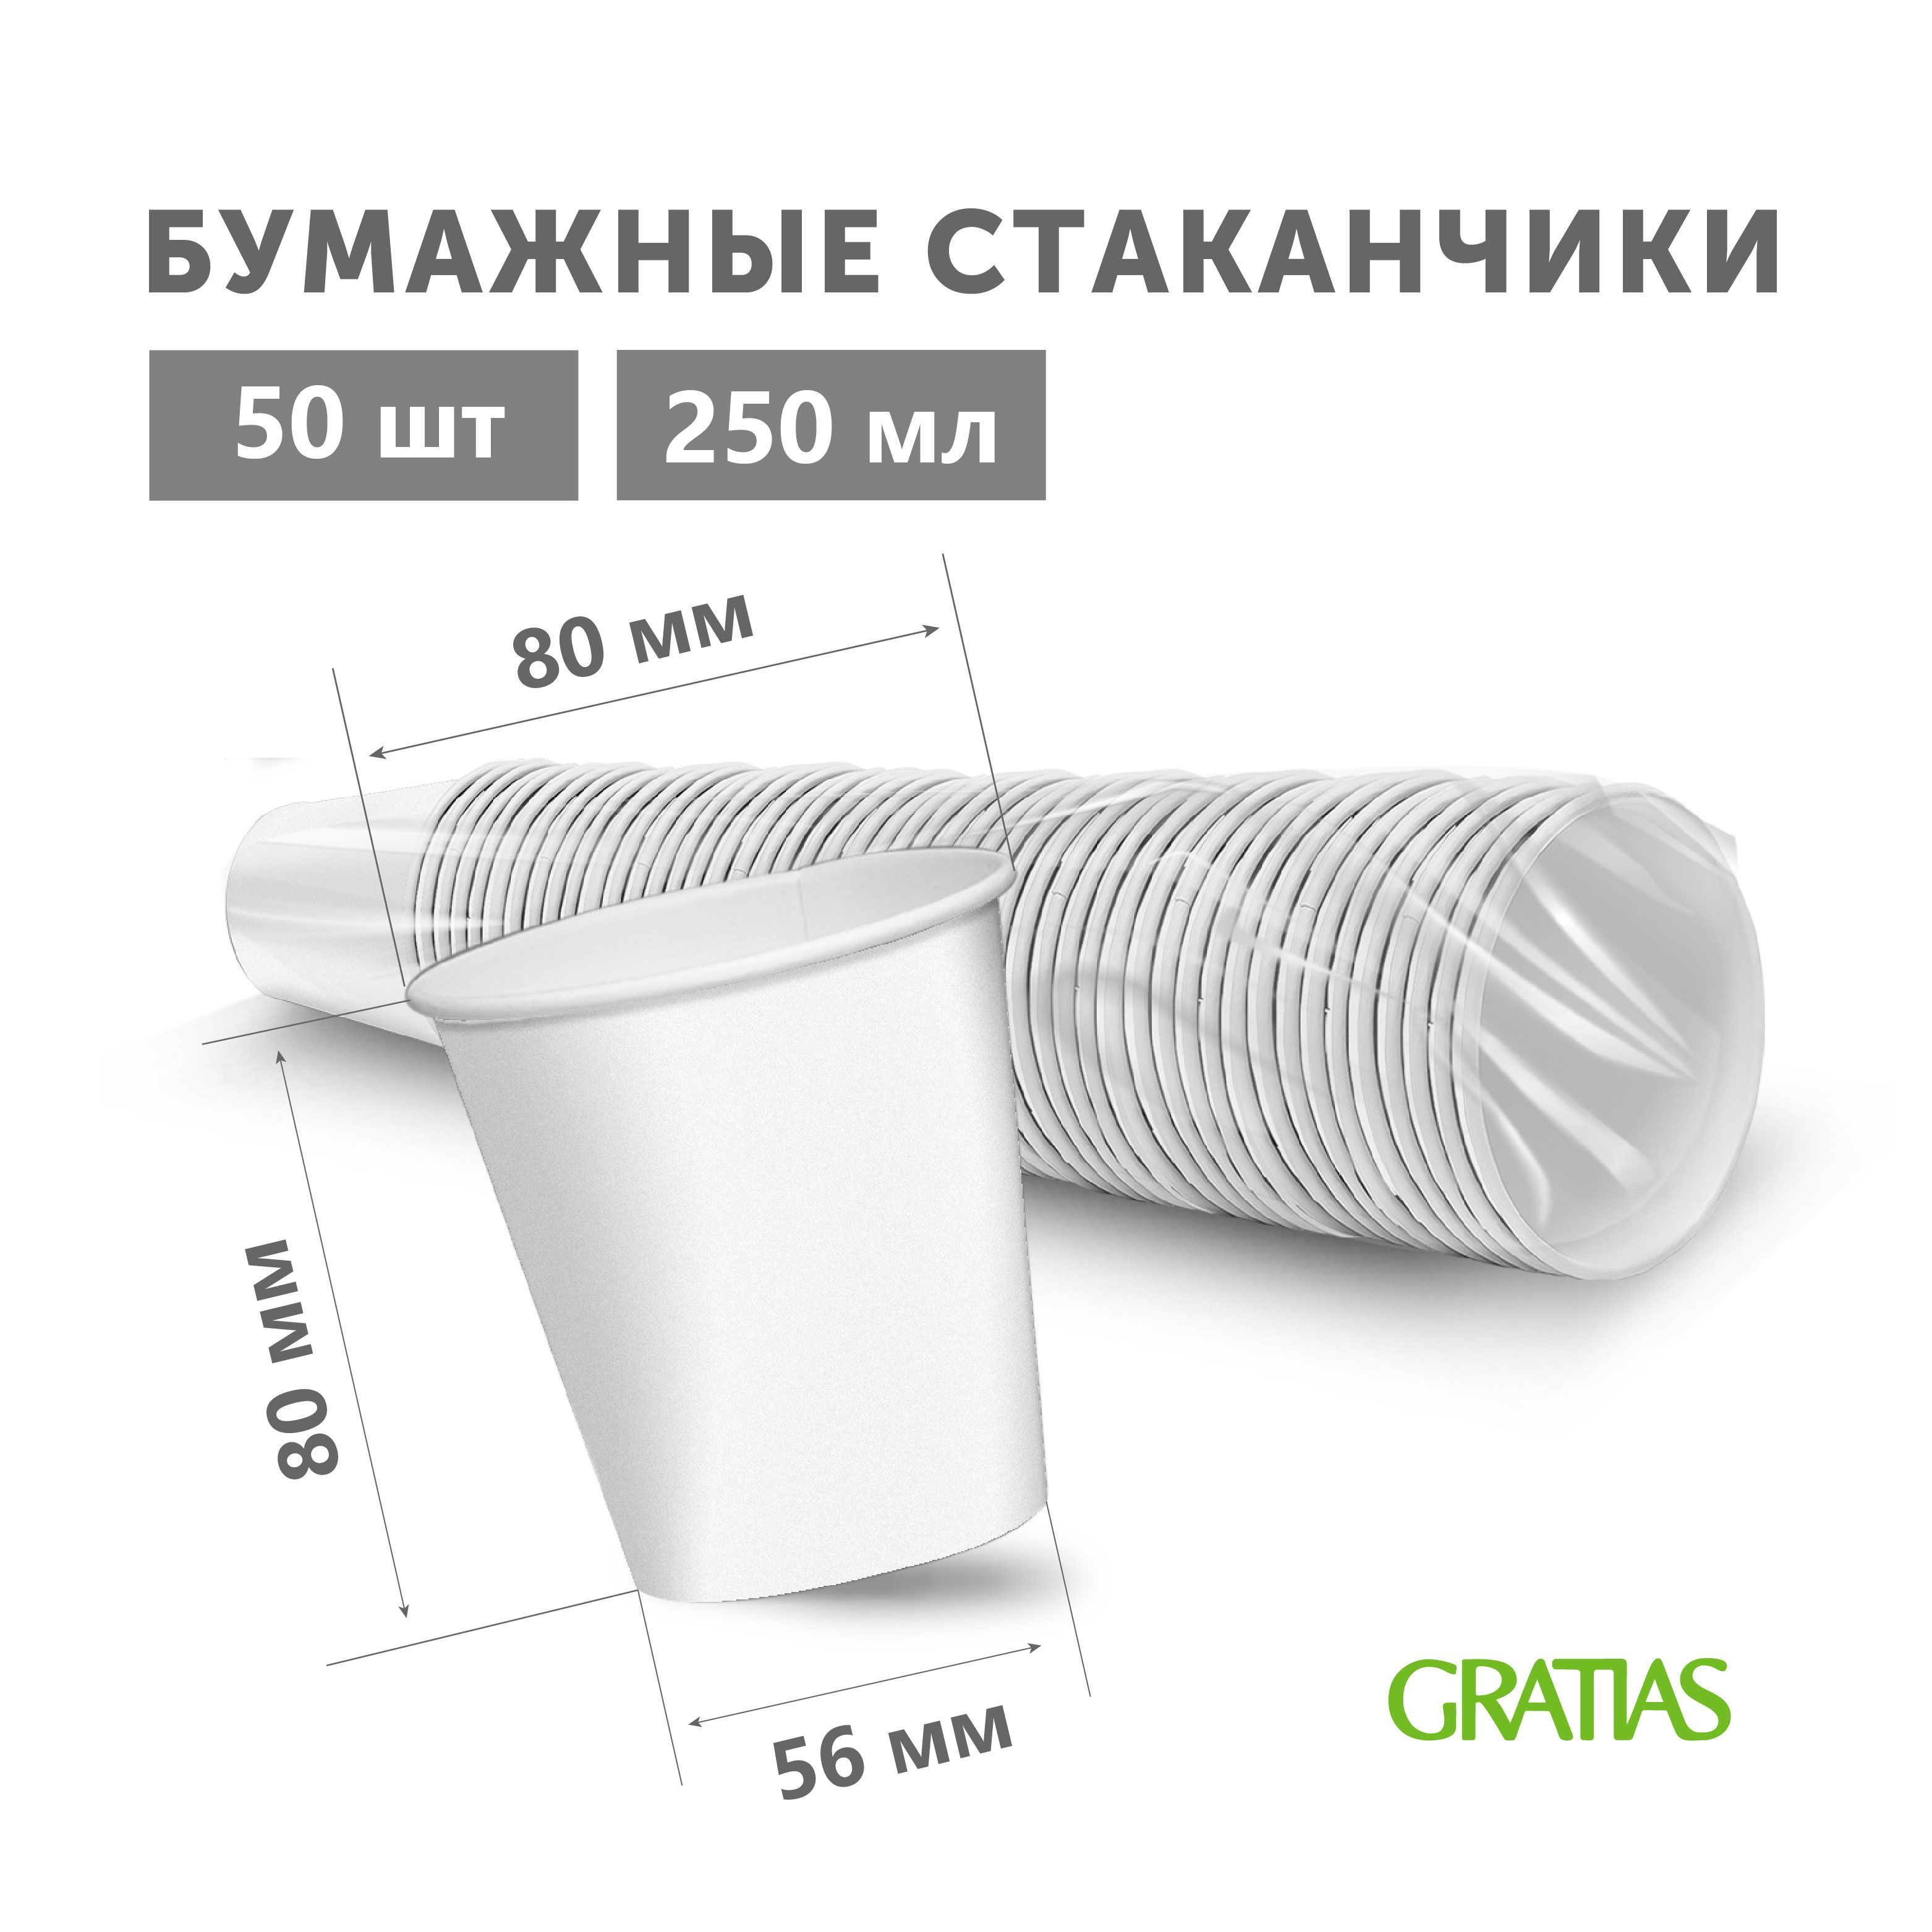 Стаканы Gratias бумажные одноразовые Белые, 250 мл х 50 шт